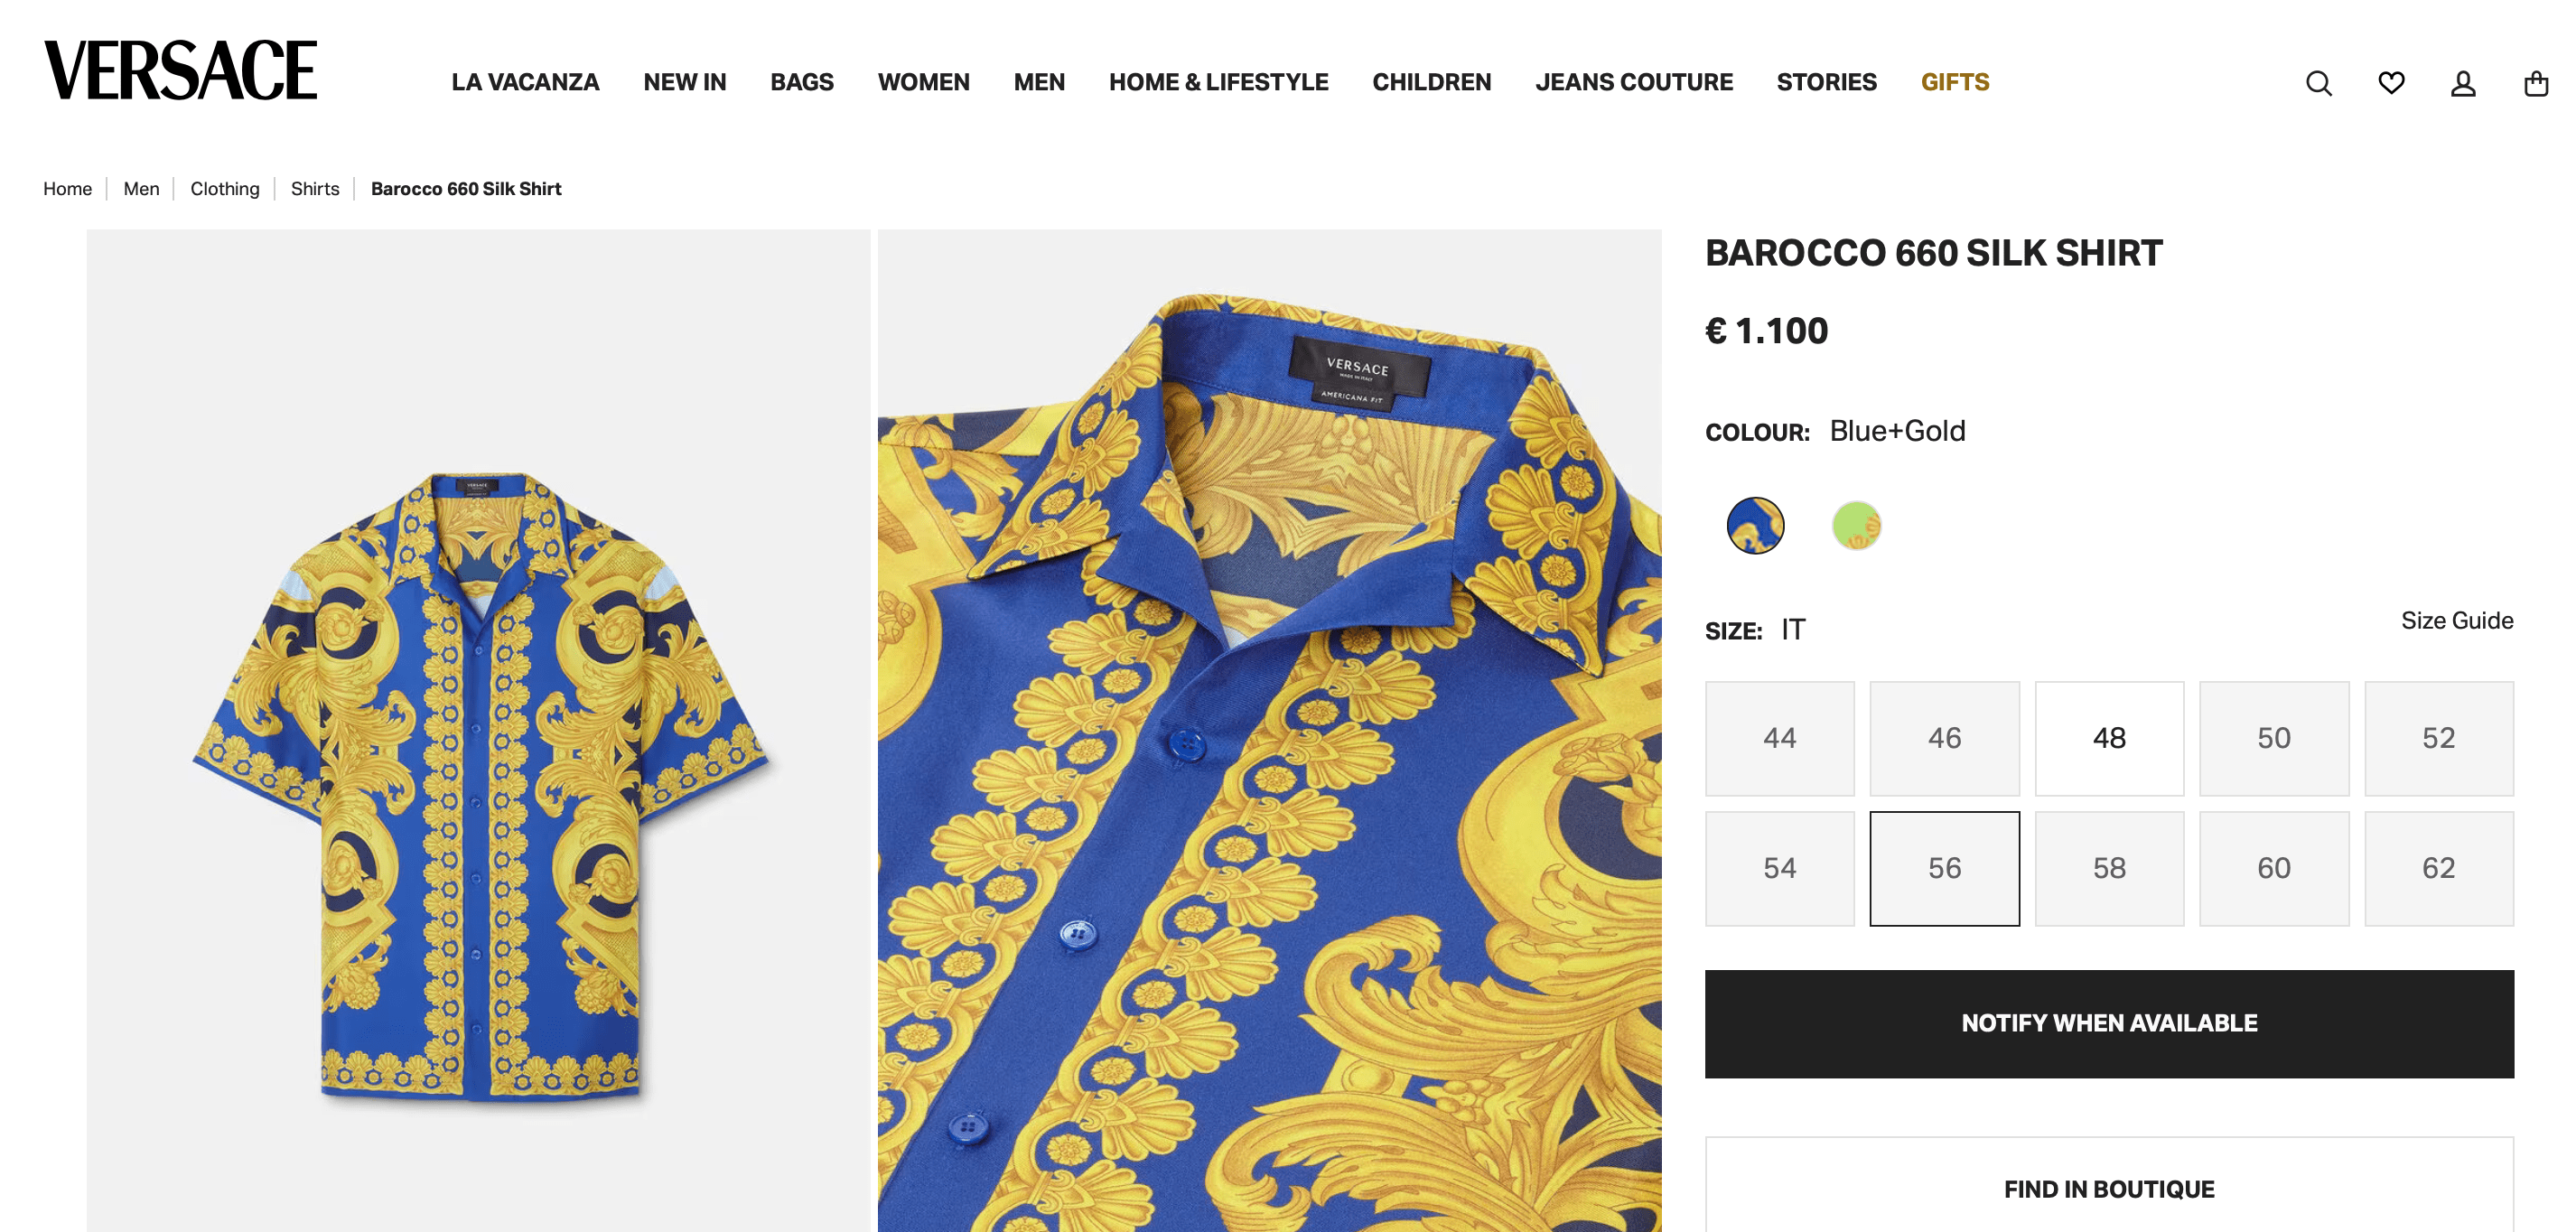 Barocco 660 silk shirt